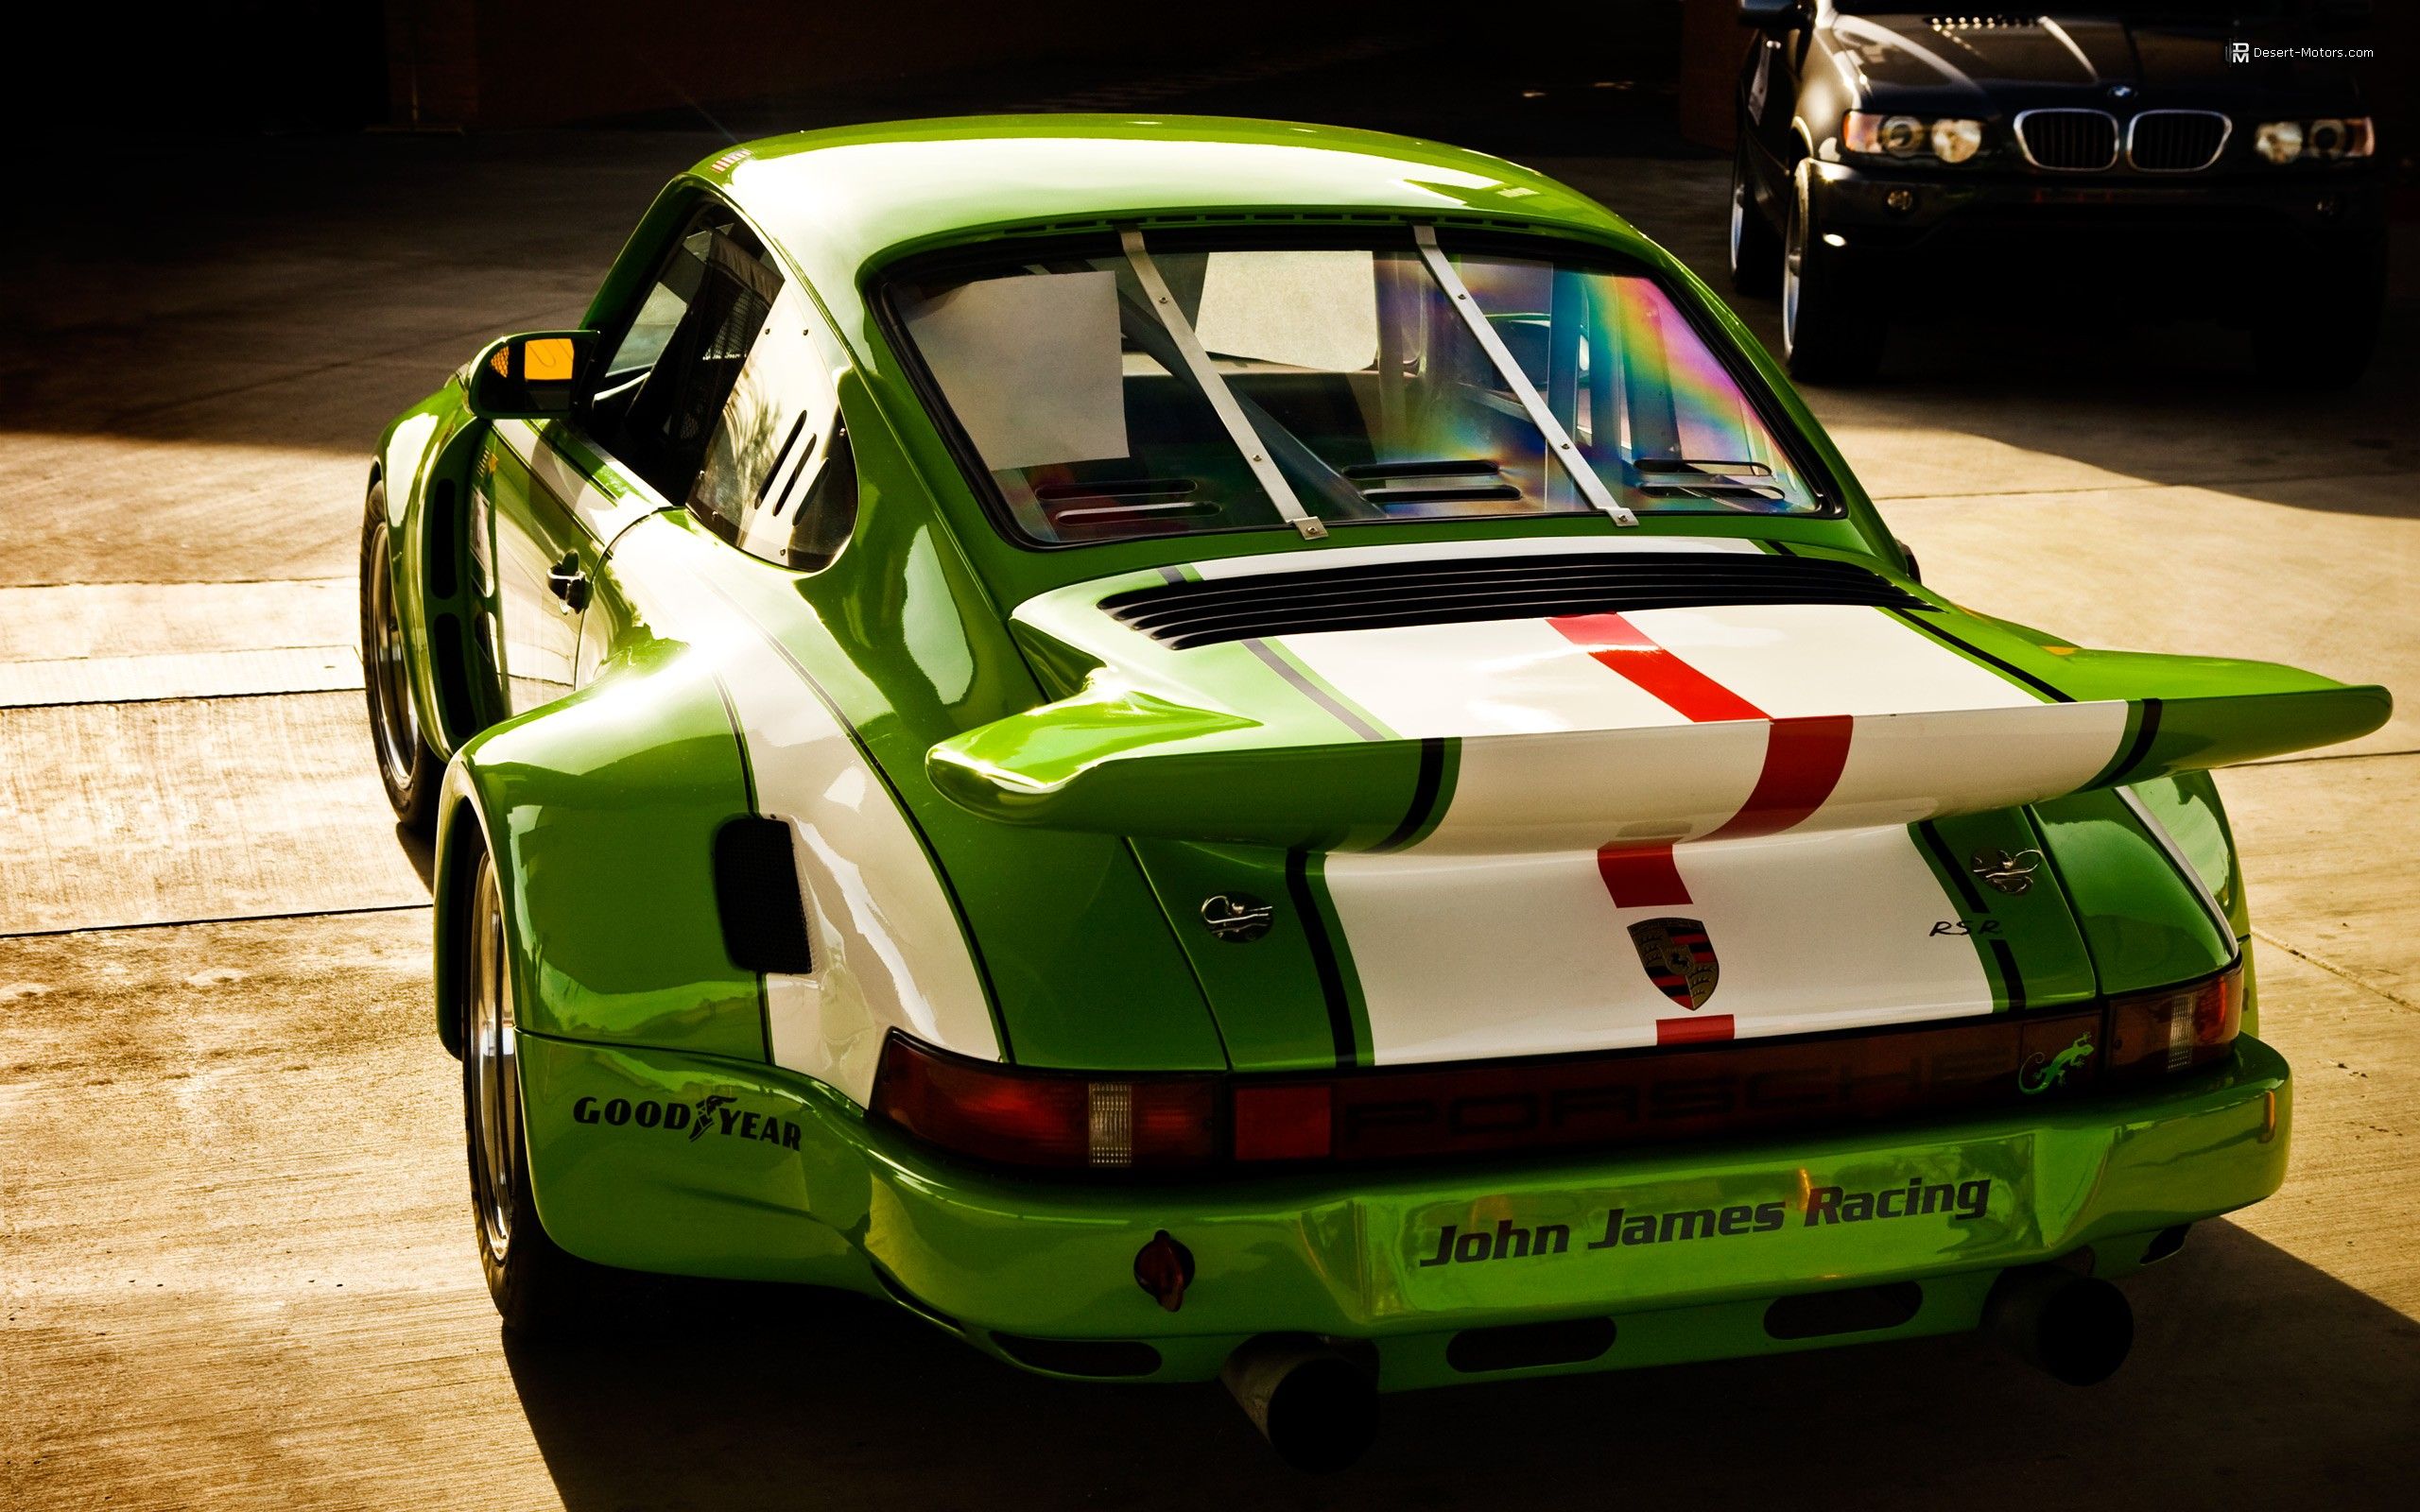 Wallpaper, 2560x1600 px, green cars, old car, Porsche 911 2560x1600